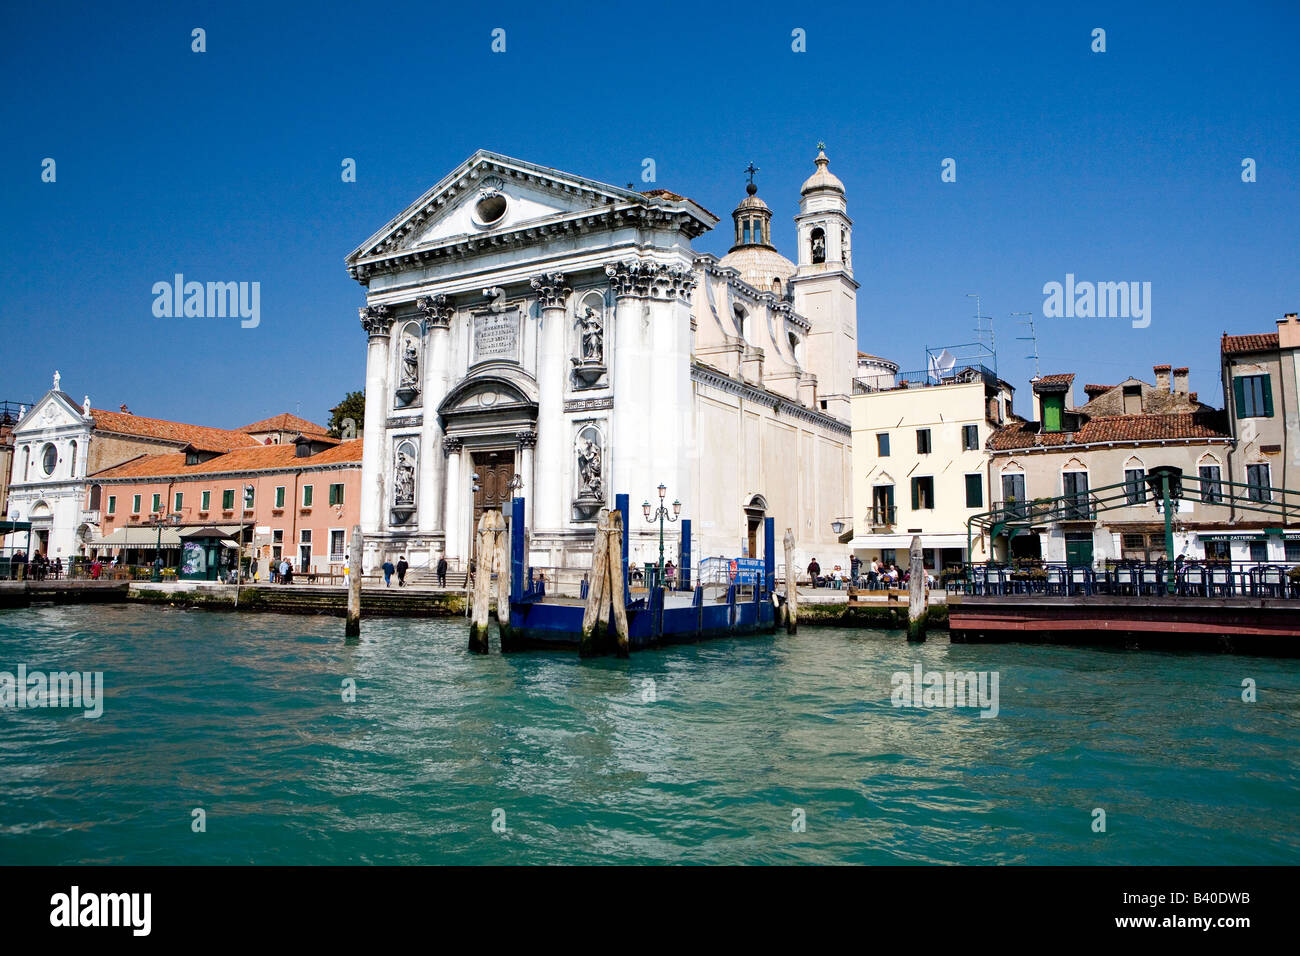 La Chiesa dei Gesuati chiesa sulle rive del Canale della Giudecca Venezia Italia Foto Stock